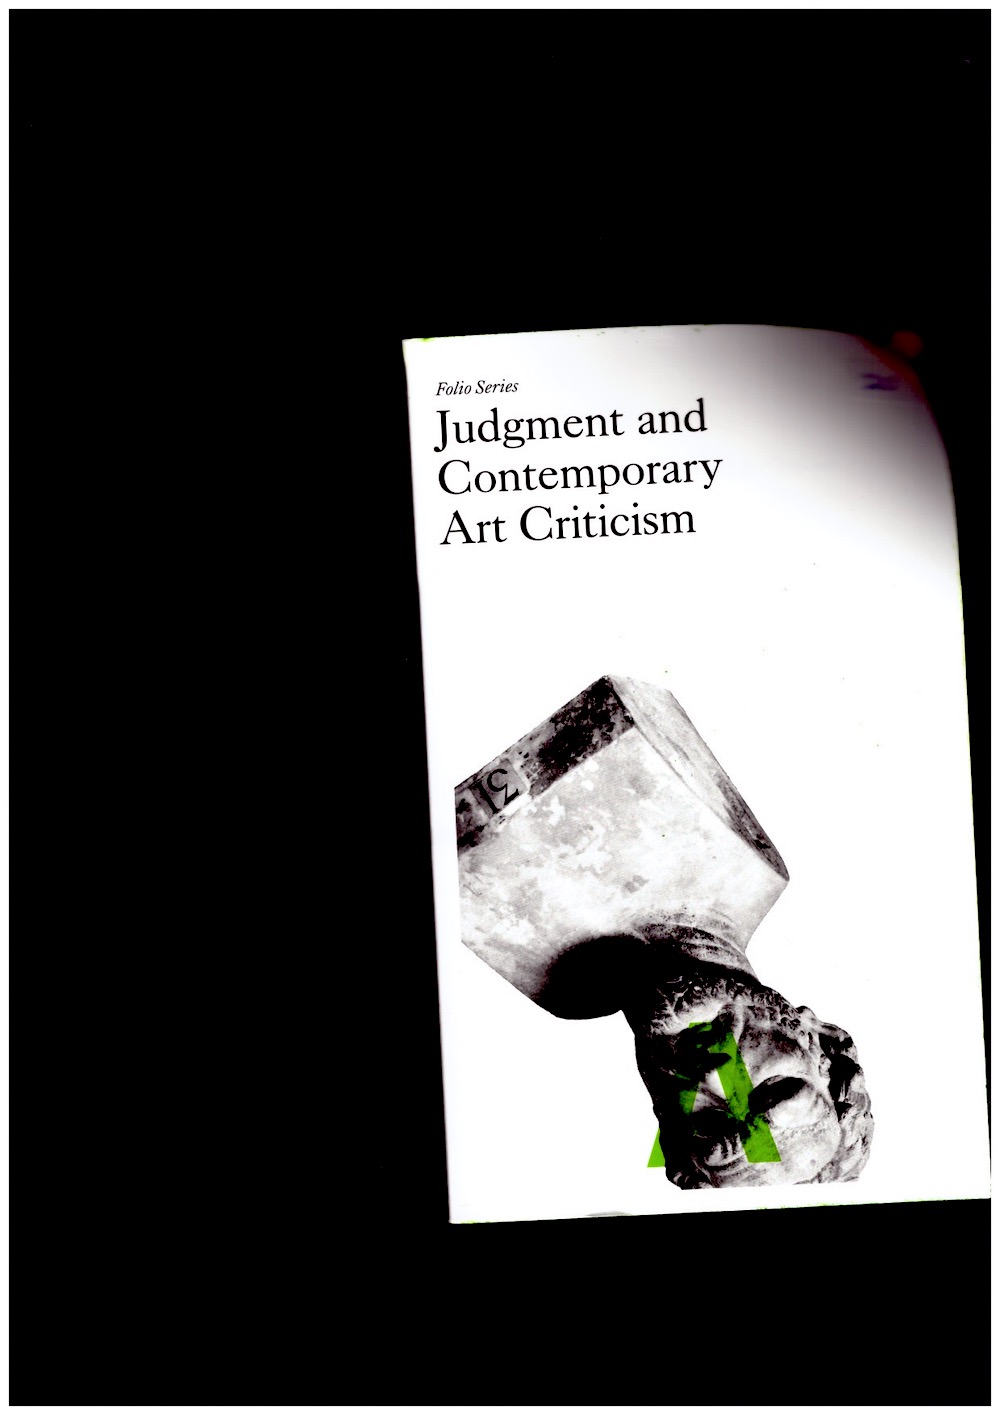 KHONSARY, Jeff Khonsary: O’BRIAN, Melanie (eds.) - Judgment and Contemporary Art Criticism